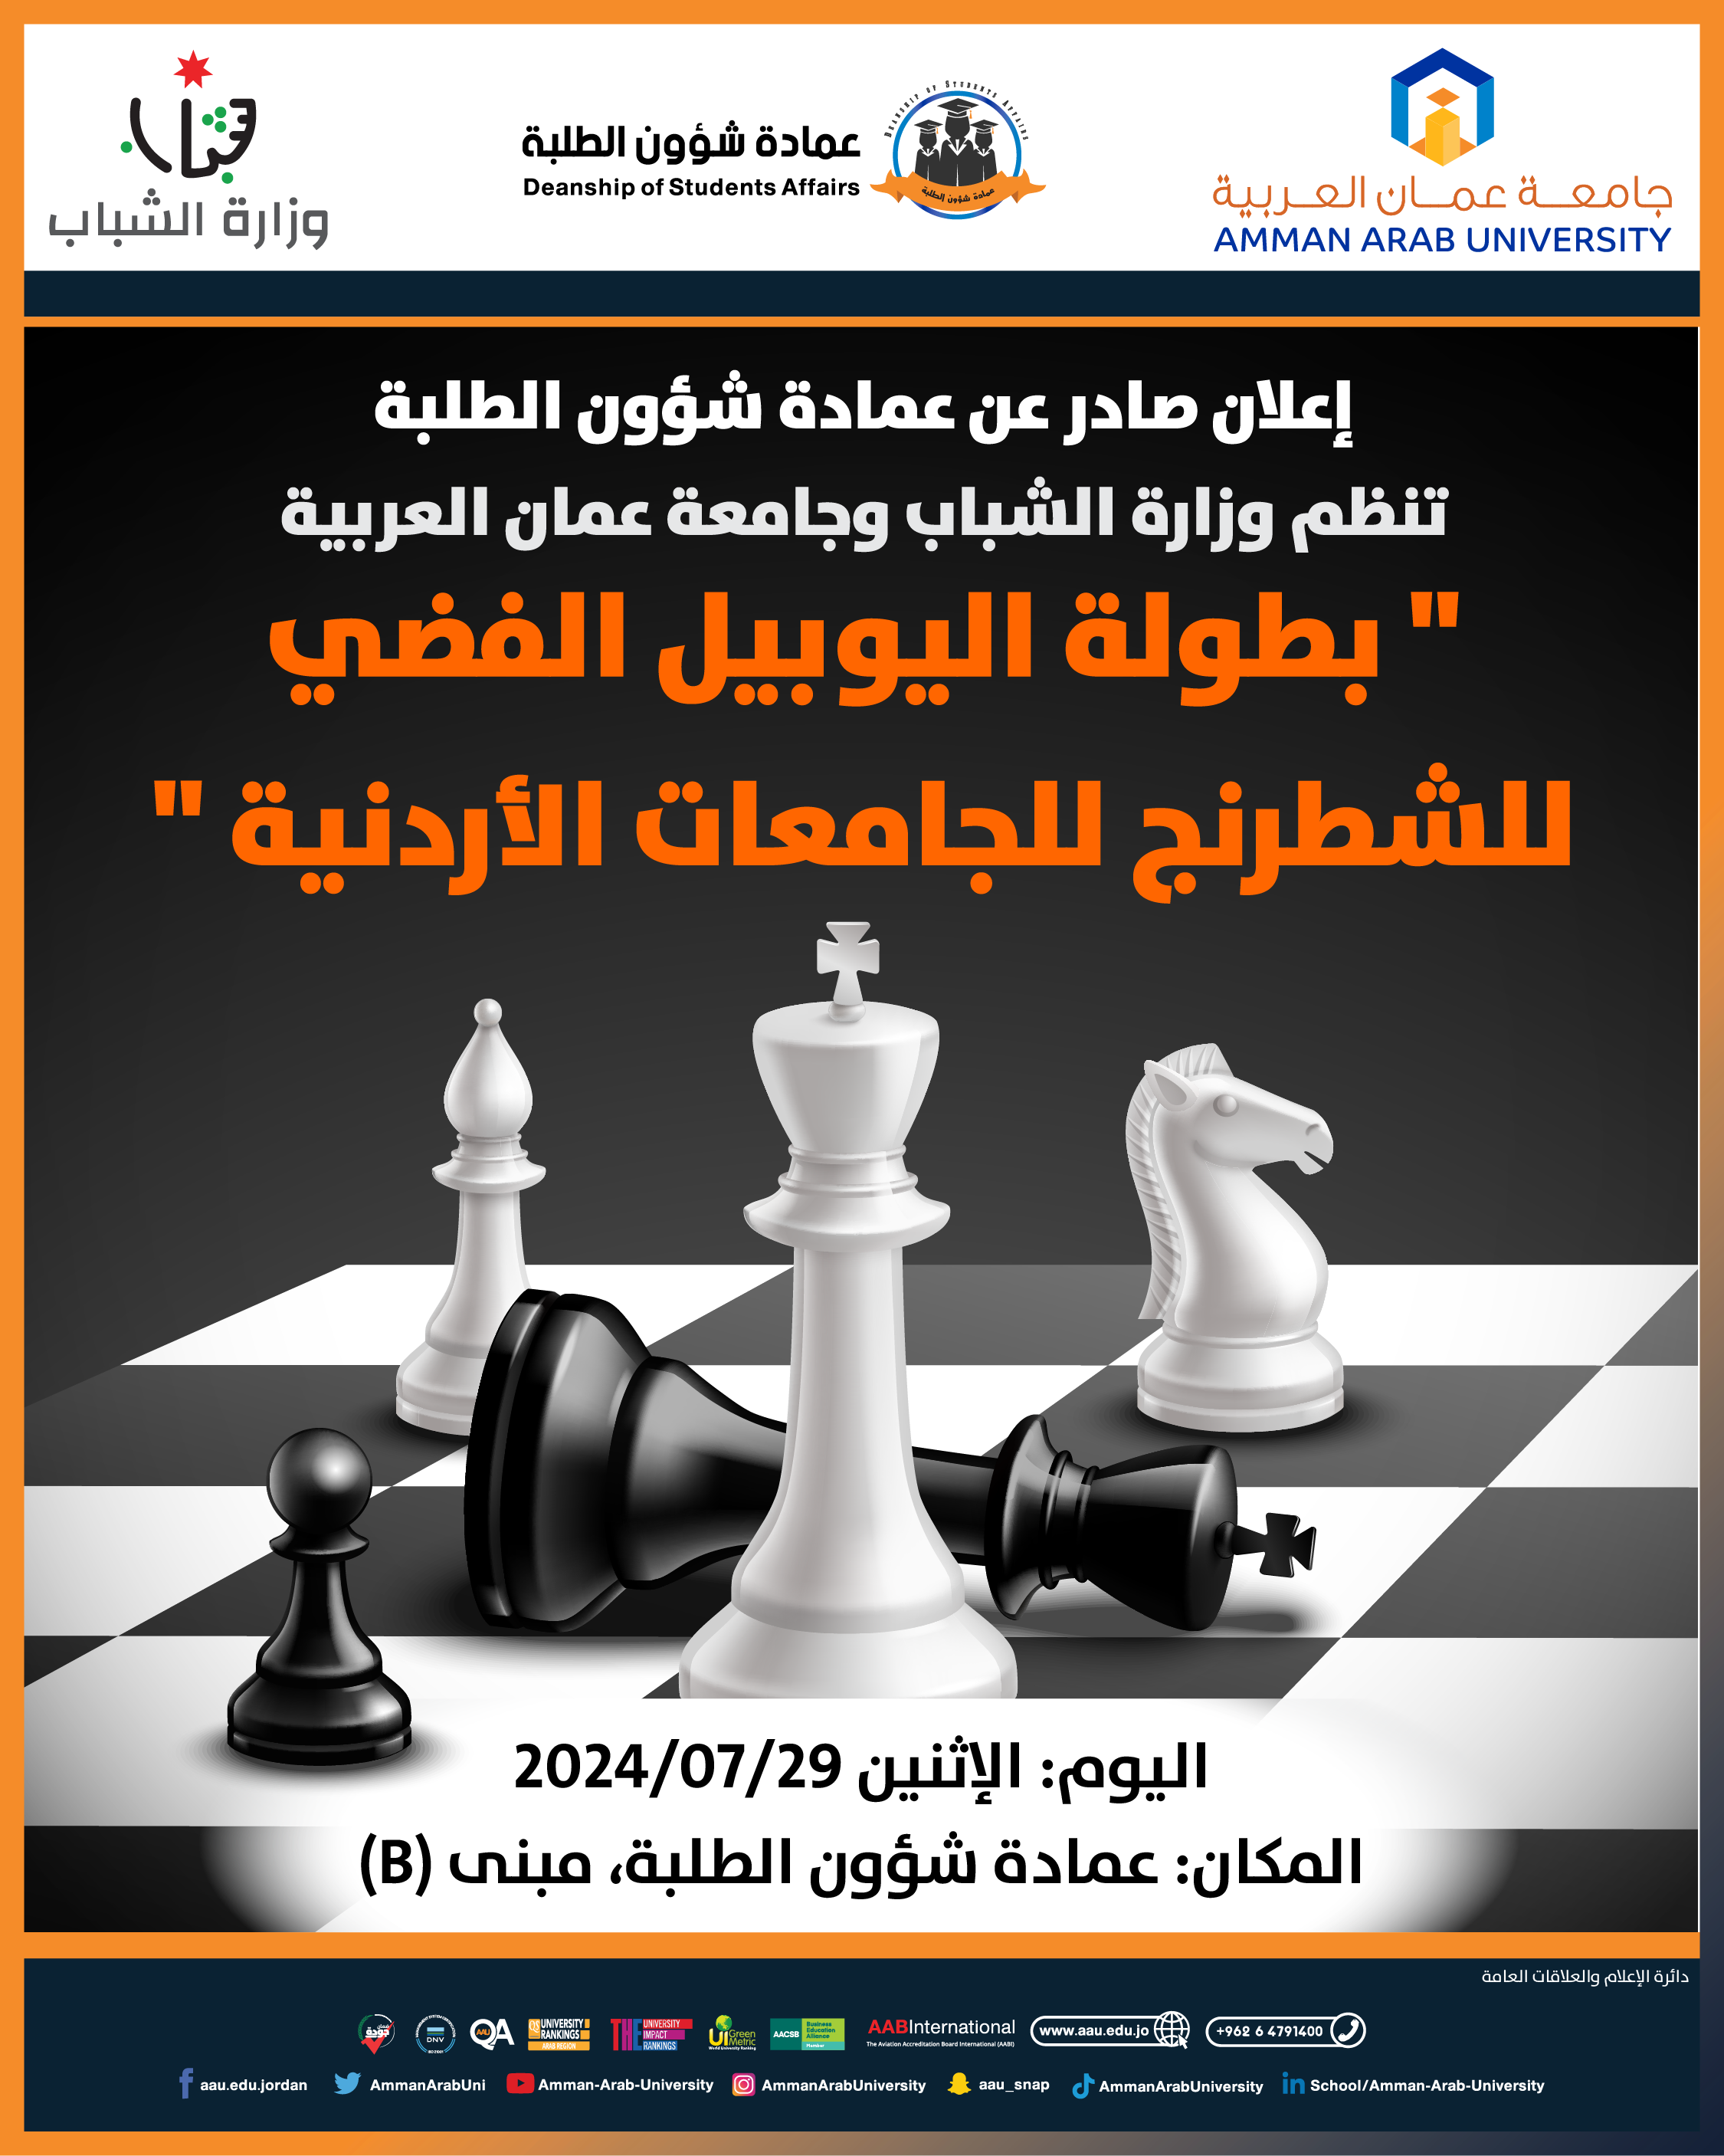 اعلان للمشاركة في بطولة اليوبيل الفضي للشطرنج